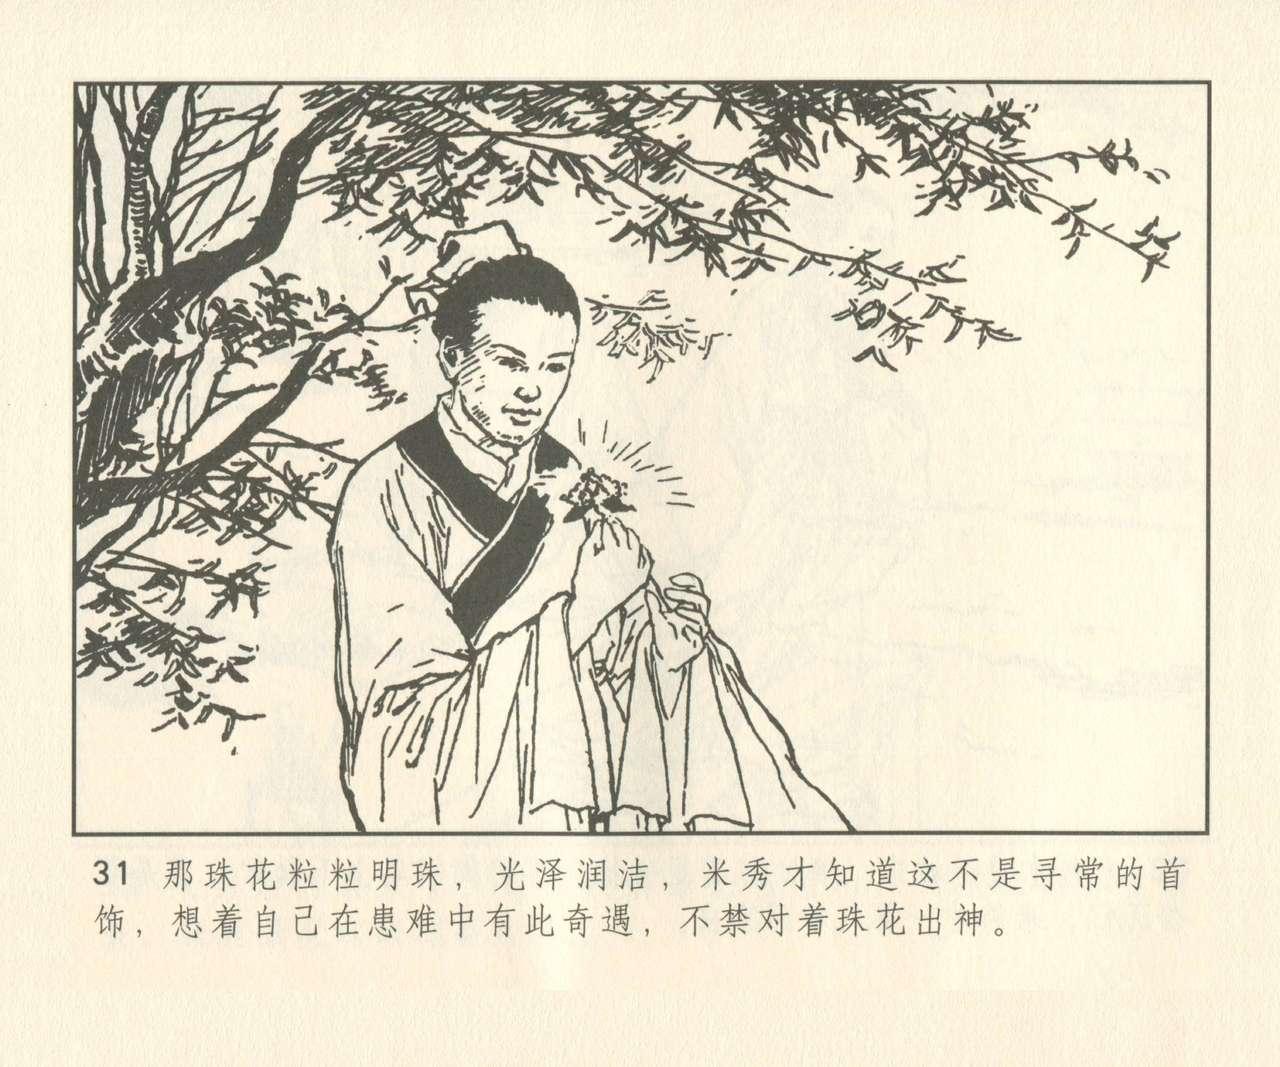 聊斋志异 张玮等绘 天津人民美术出版社 卷二十一 ~ 三十 159